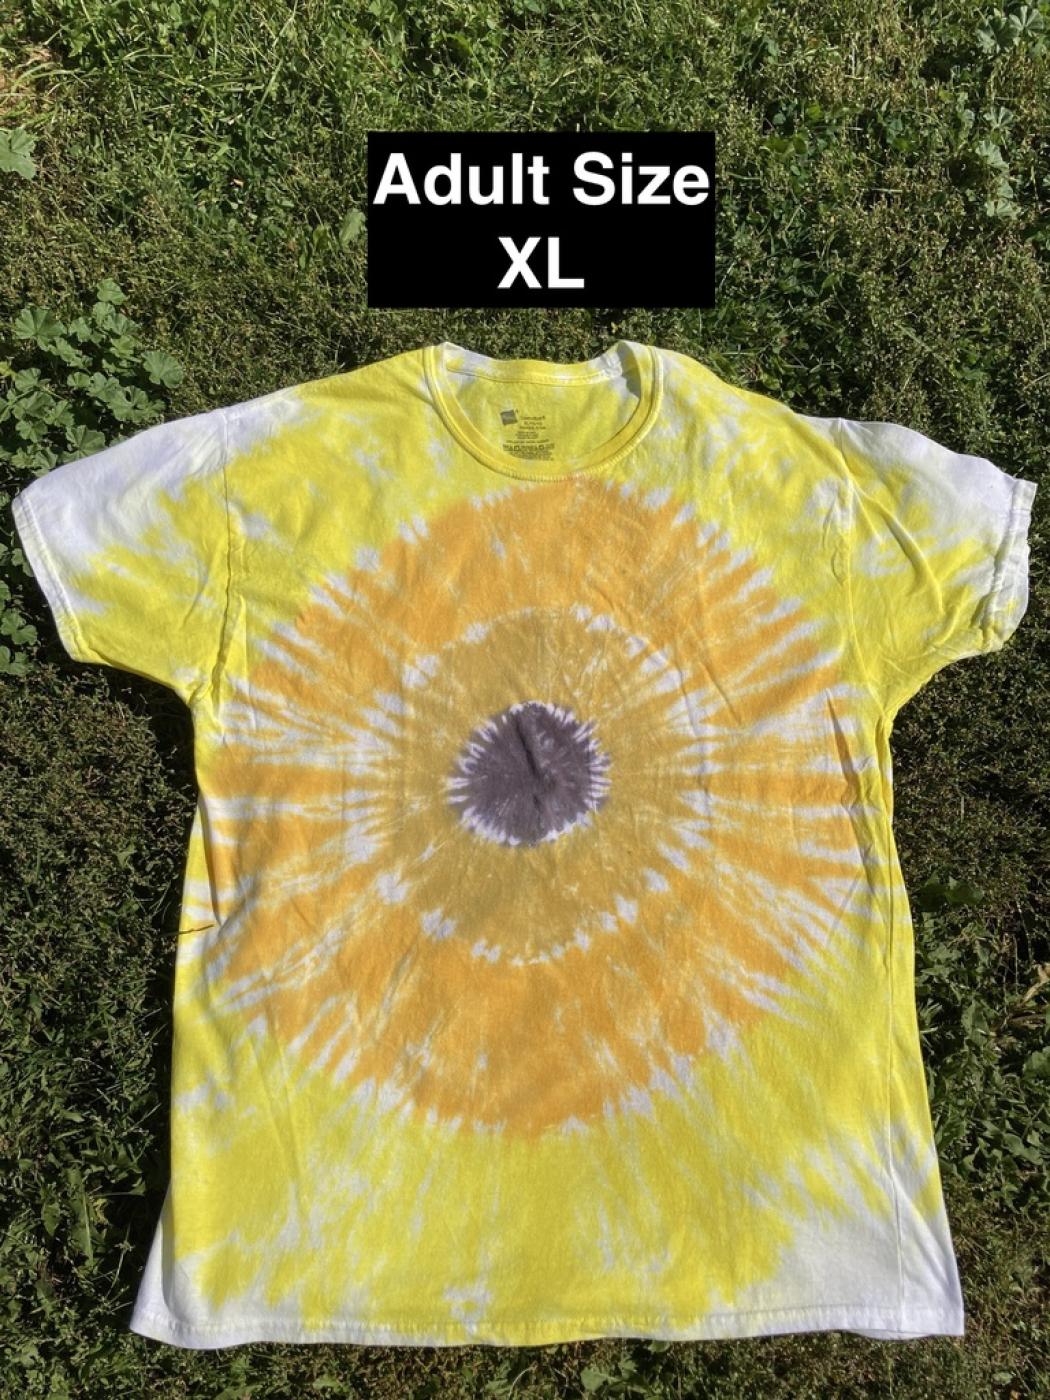 Center Target Sunflower Tie Dye T Shirt Adult XL